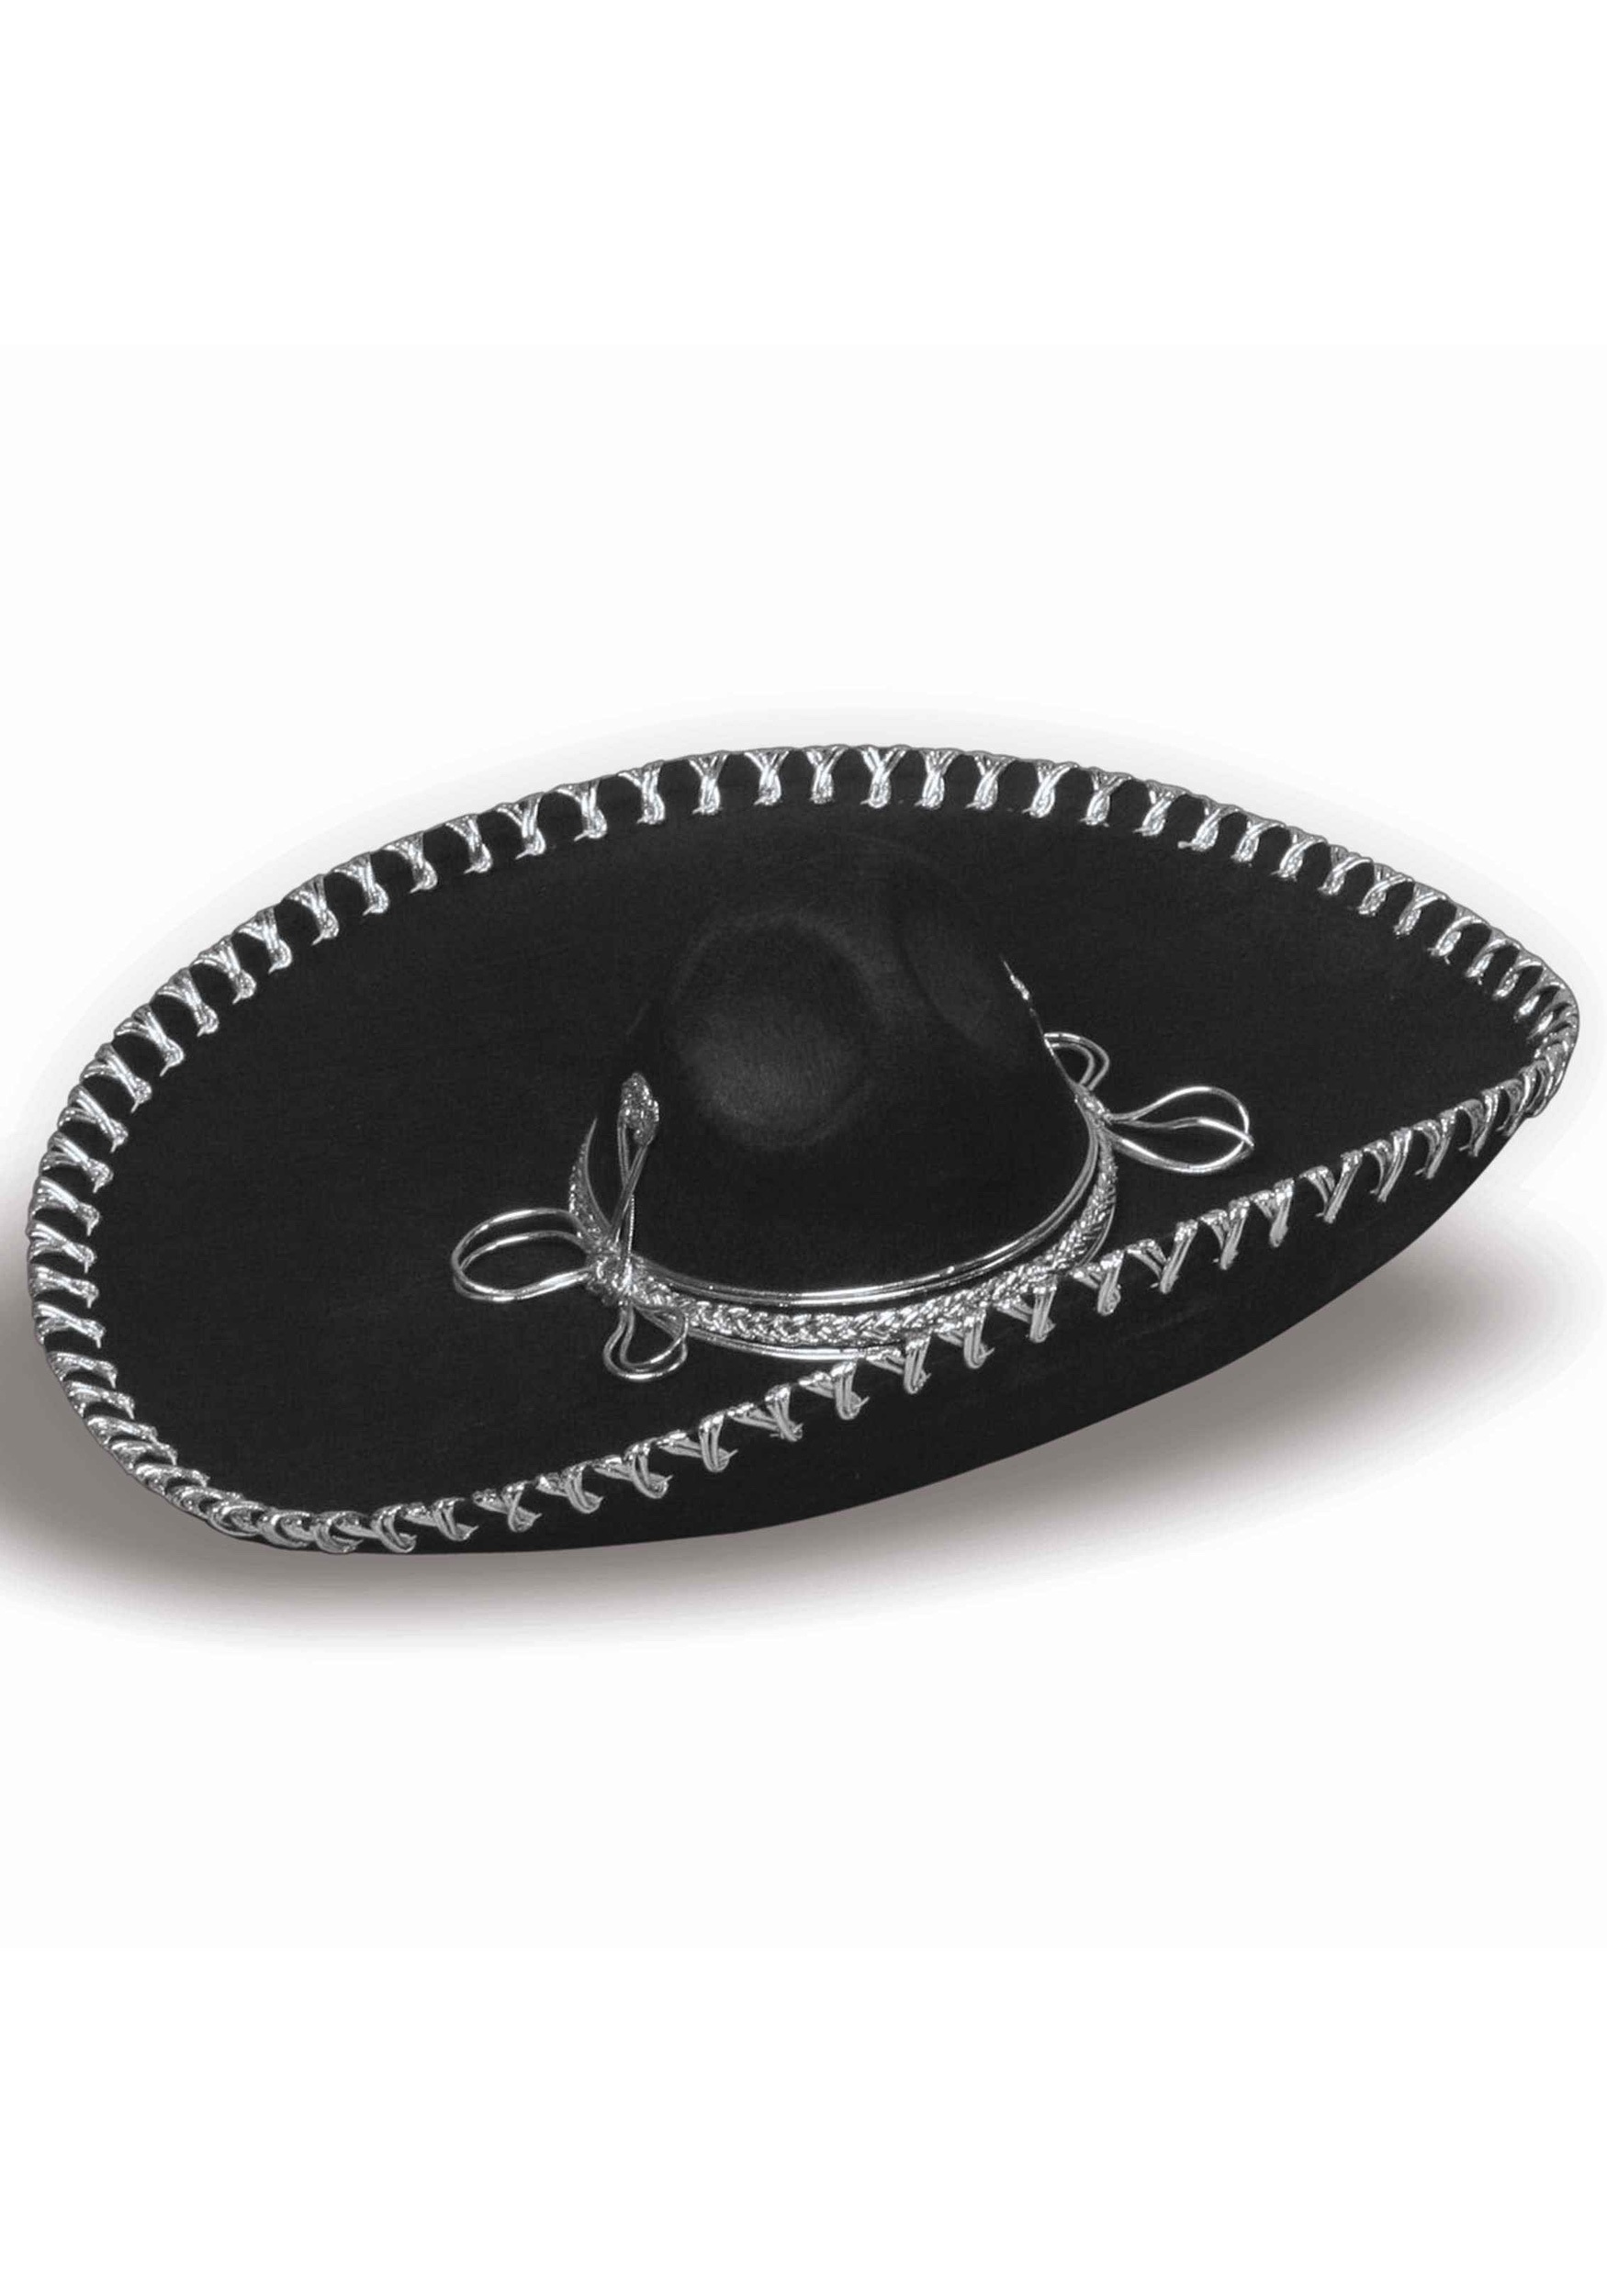 Oversized Black Sombrero